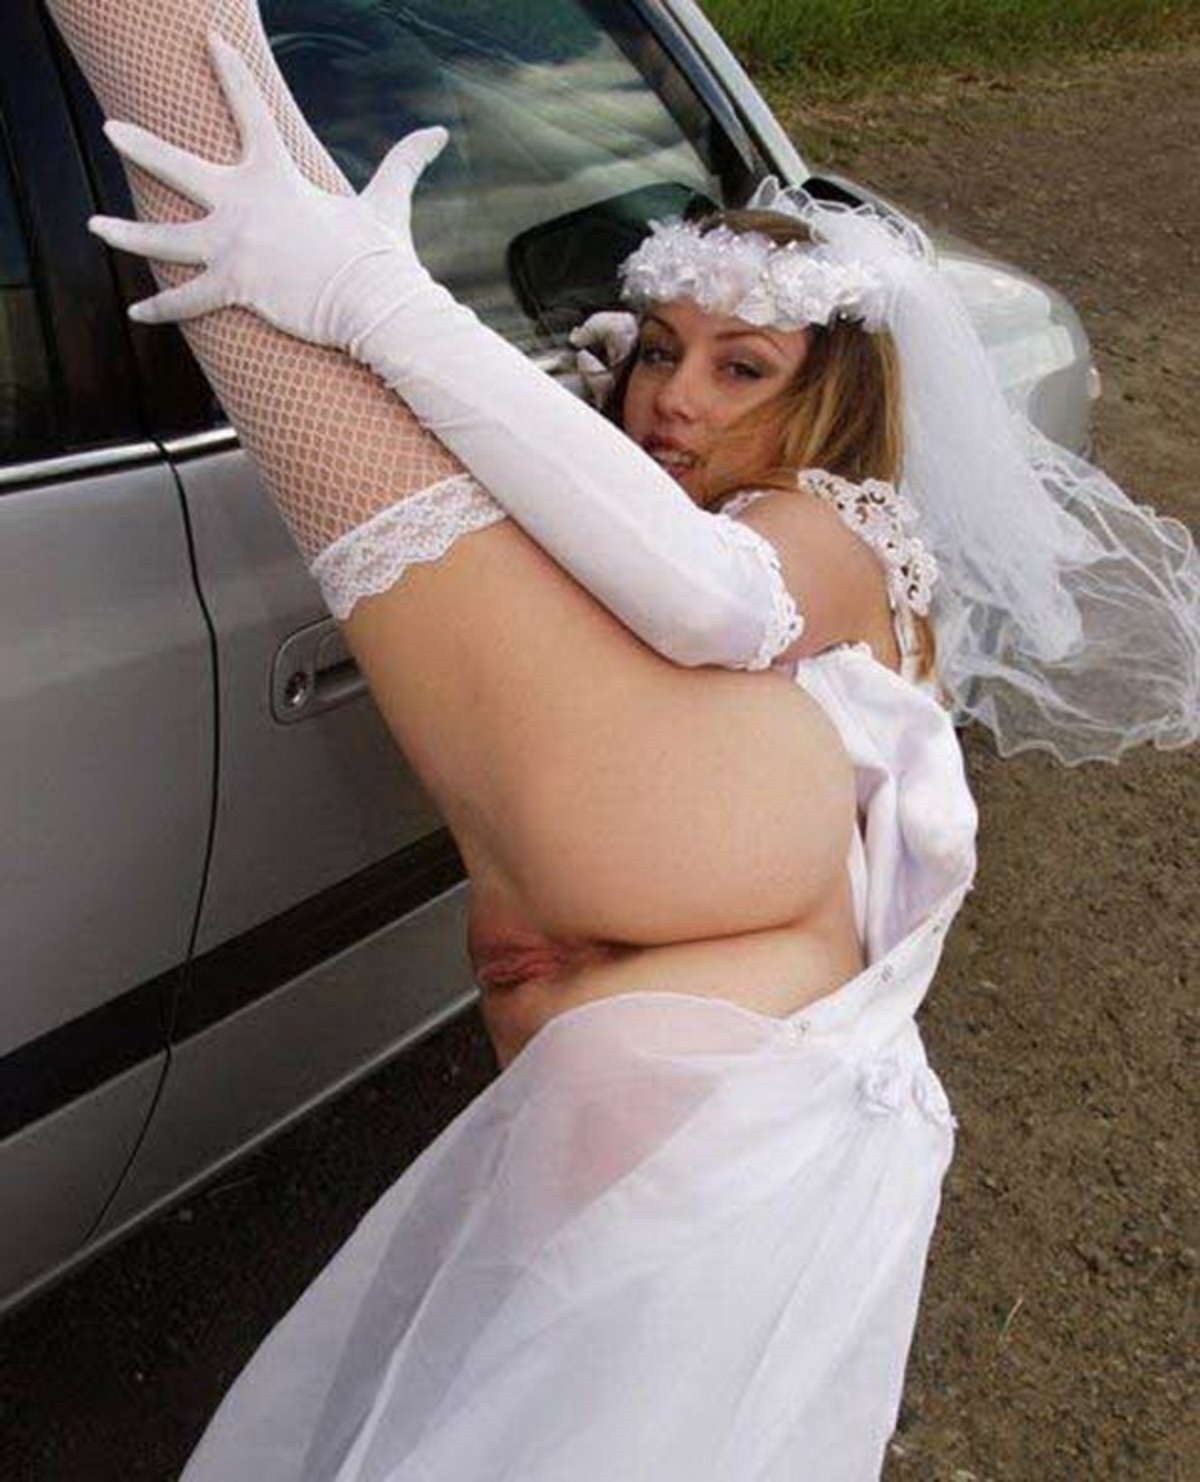 На фото голая невеста подготавливает свою киску